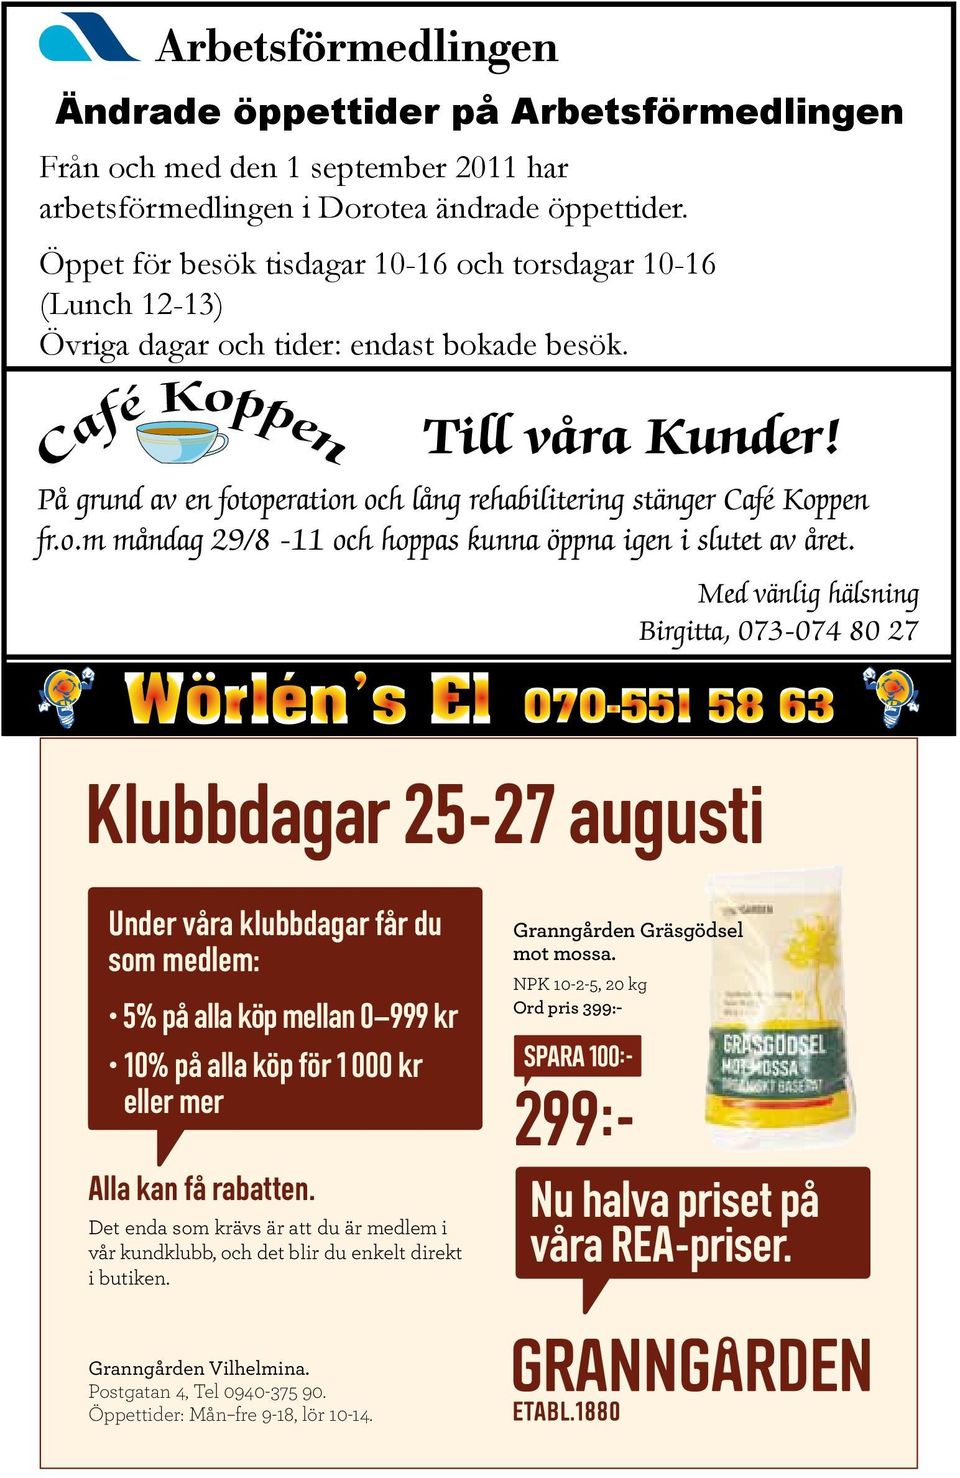 På grund av en fotoperation och lång rehabilitering stänger Café Koppen fr.o.m måndag 29/8-11 och hoppas kunna öppna igen i slutet av året.